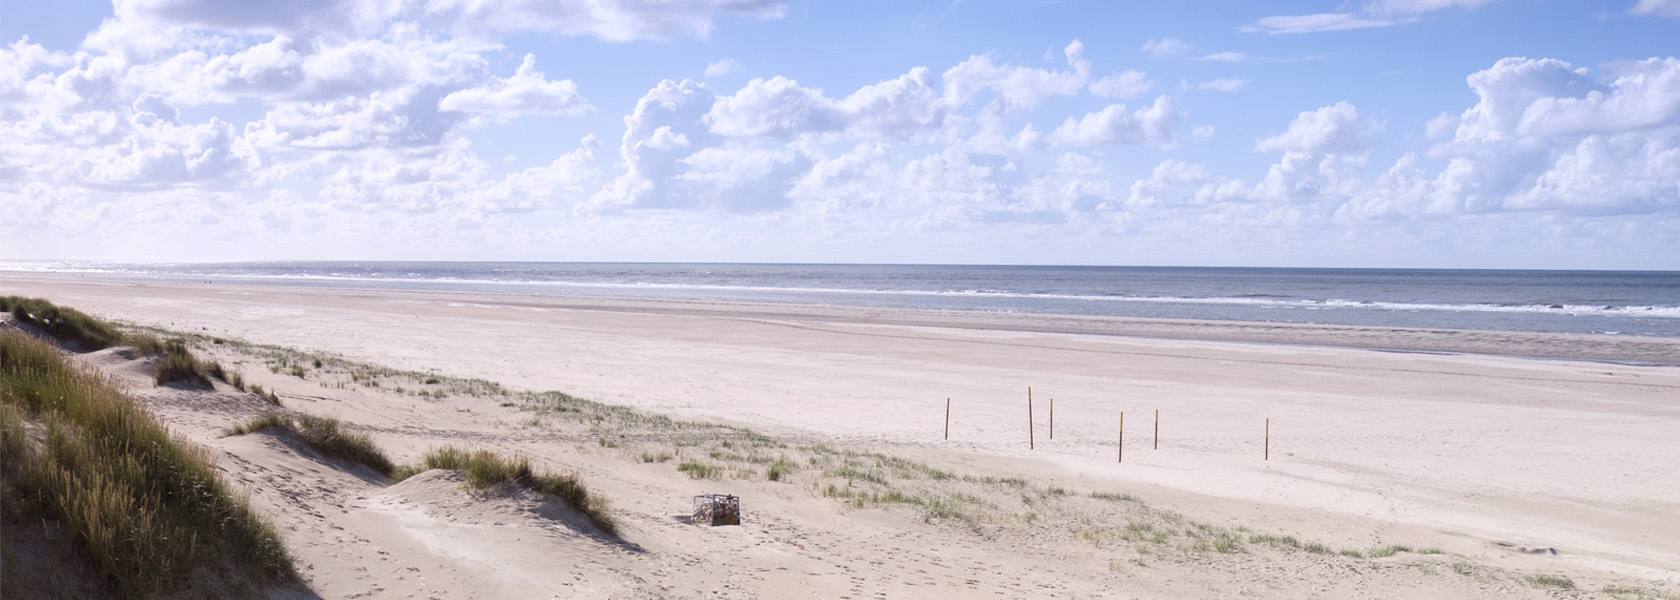 Strand von Langeoog, © Tourismus-Service Langeoog